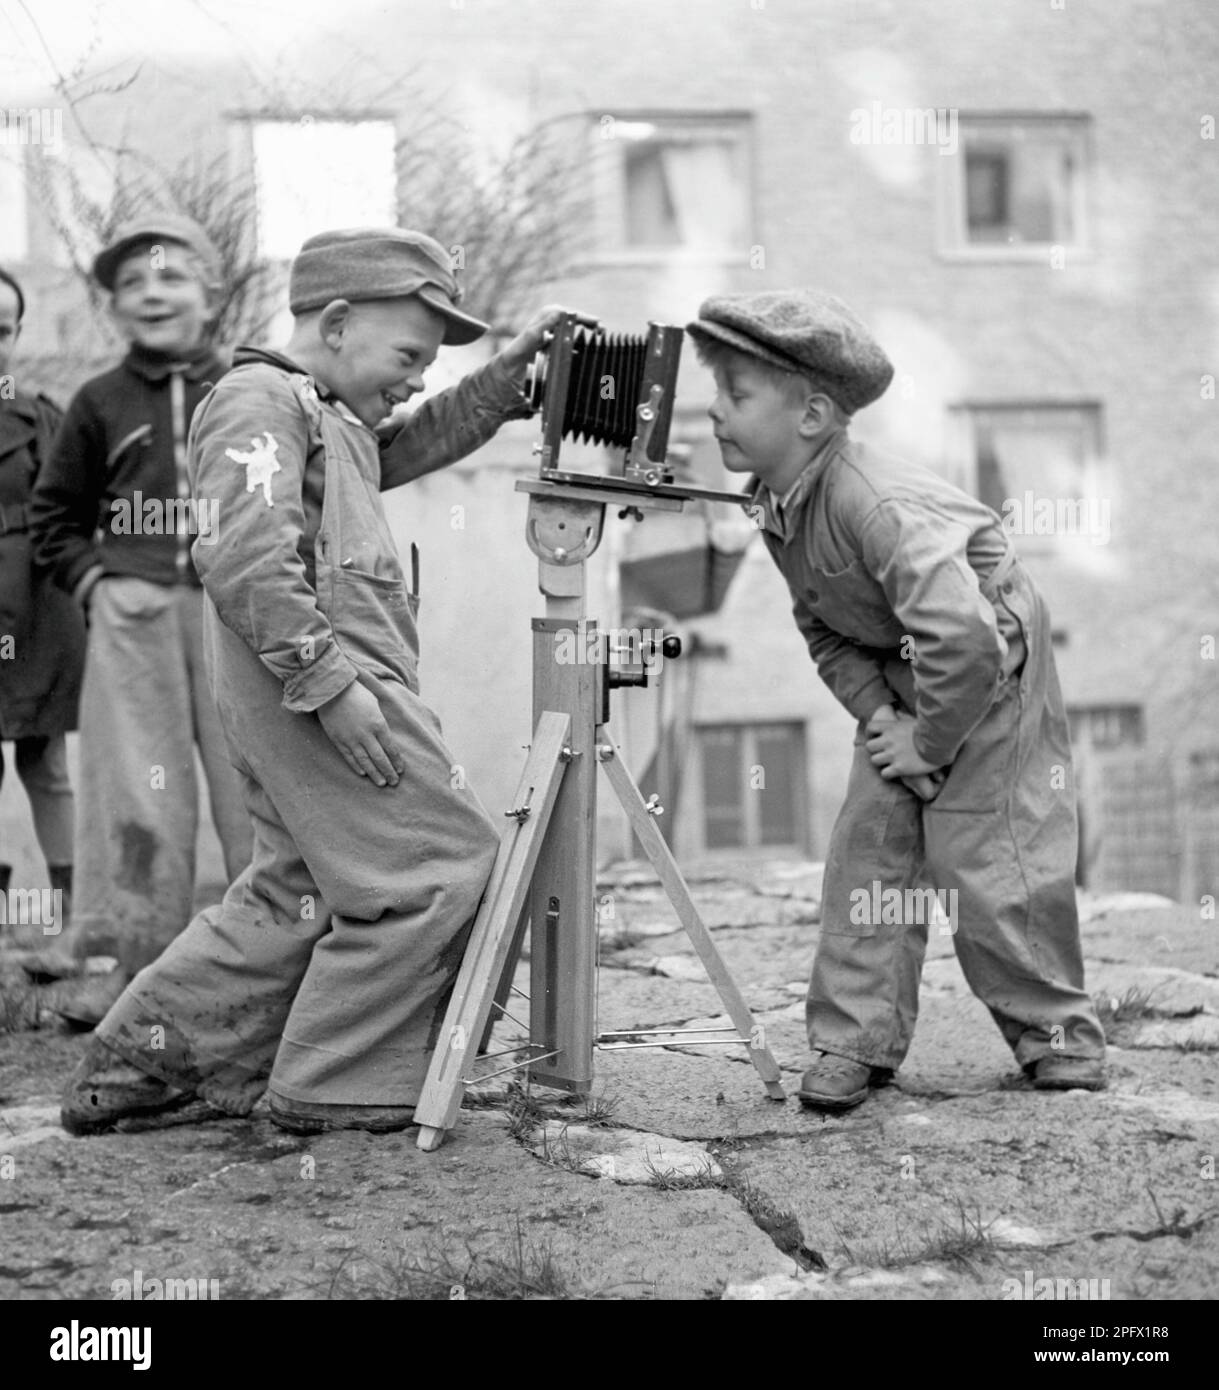 Jungs in den 1940er. Ein neugieriges Kind schaut mit seinem Freund in eine Kamera, die auf einem Stativ befestigt ist. Schweden 1945. Kristoffersson Ref. N107-6 Stockfoto